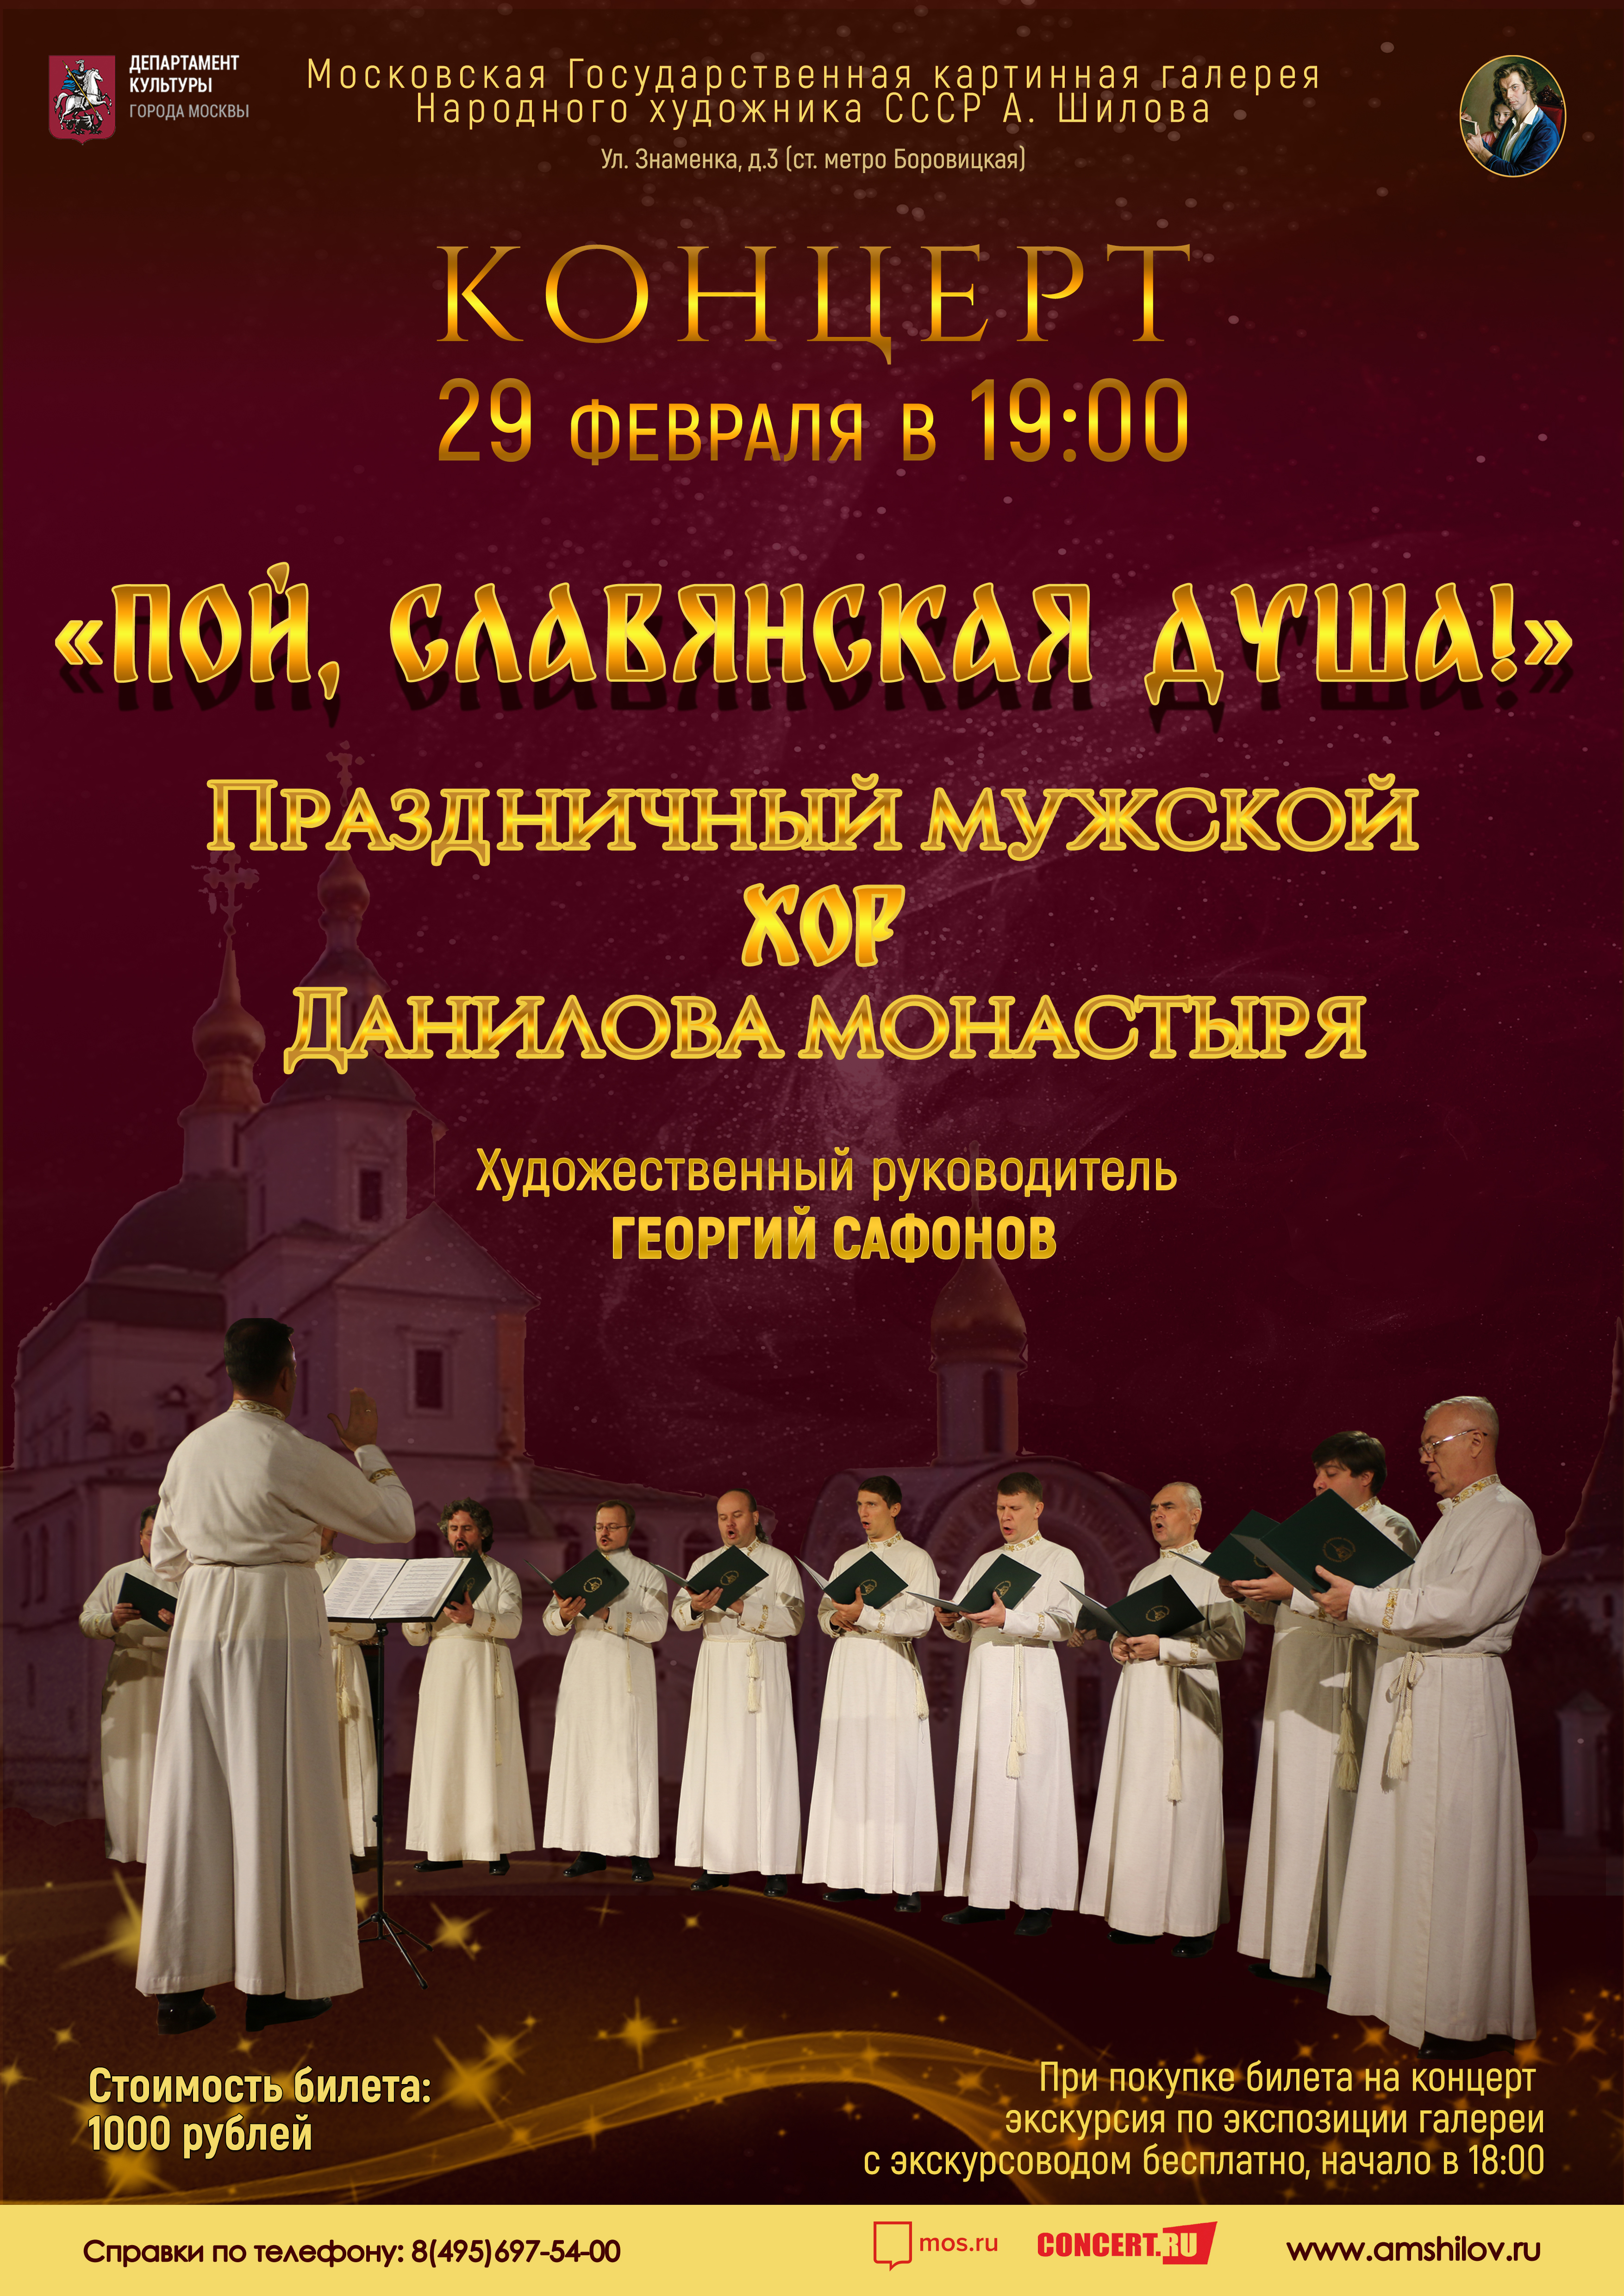 С Днем столицы Казахстана: поздравление в прозе и стихами